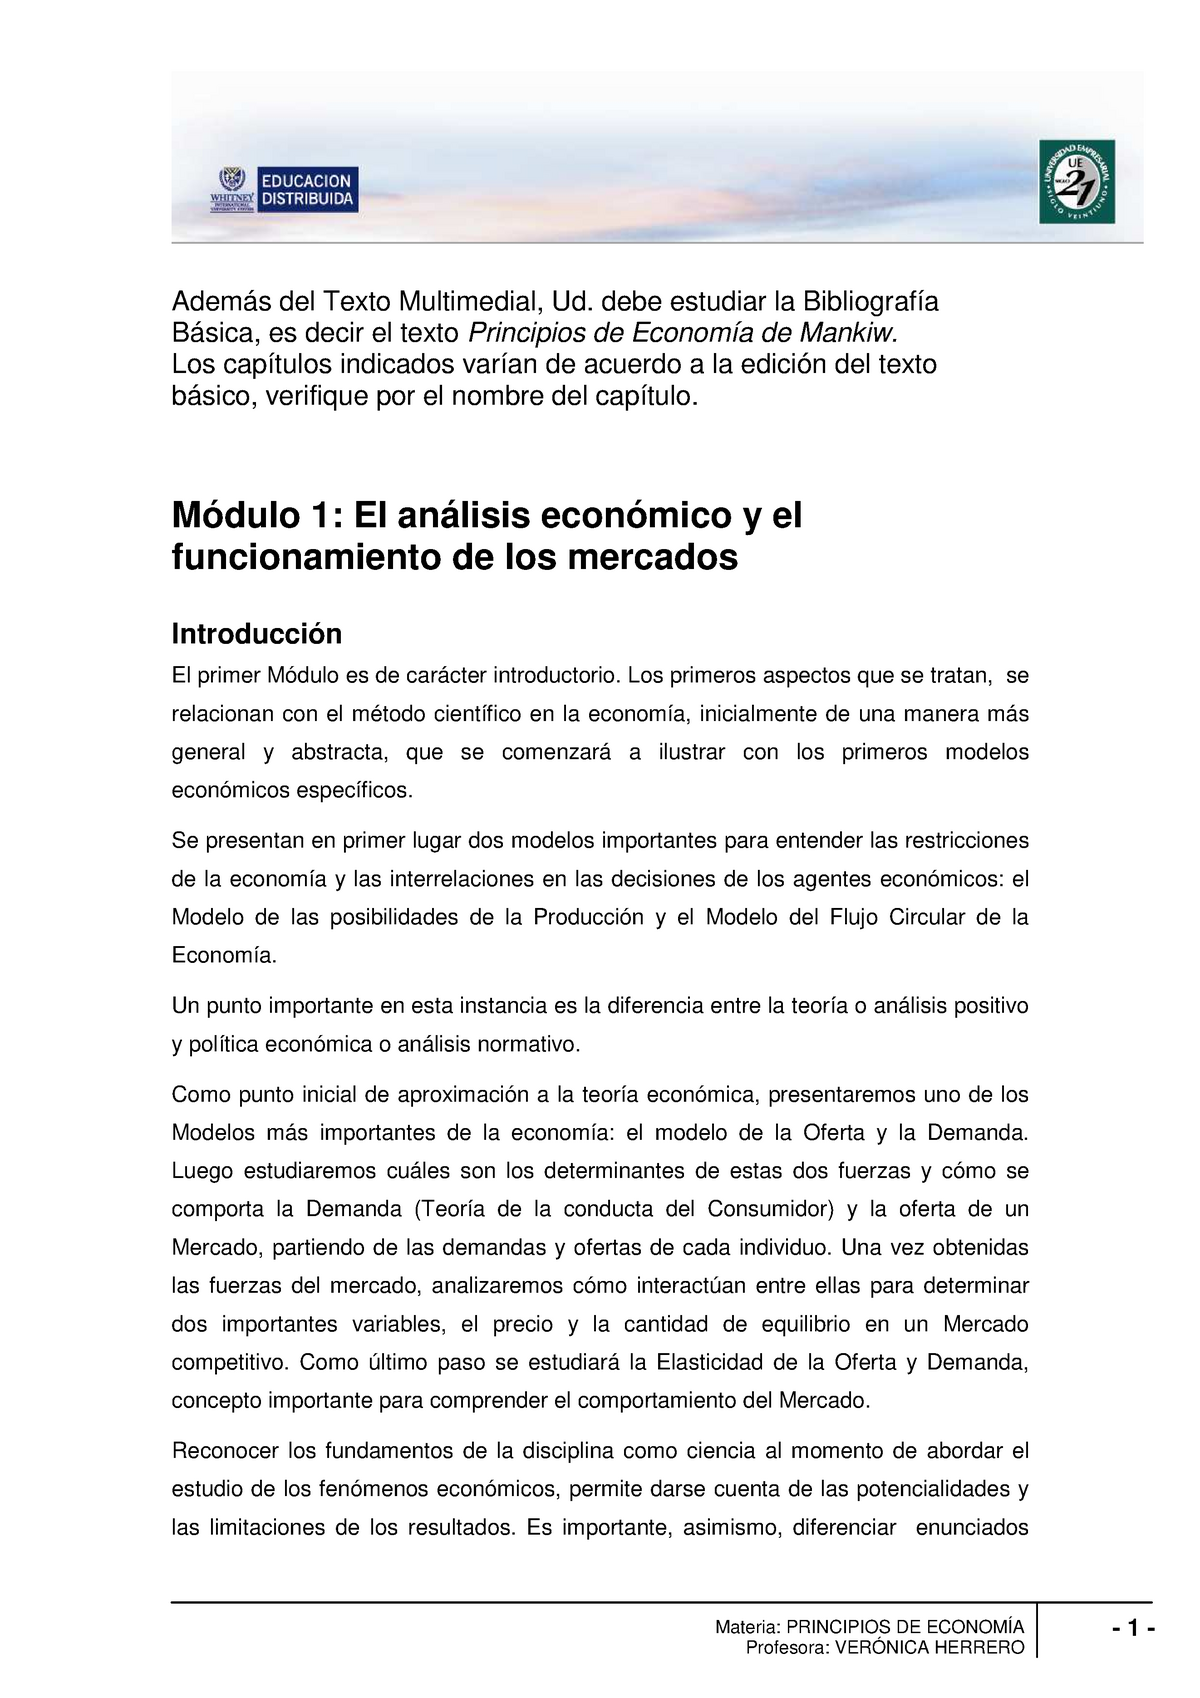 El análisis económico y el funcionamiento de los mercados - Materia:  PRINCIPIOS DE ECONOMÍA Además - Studocu